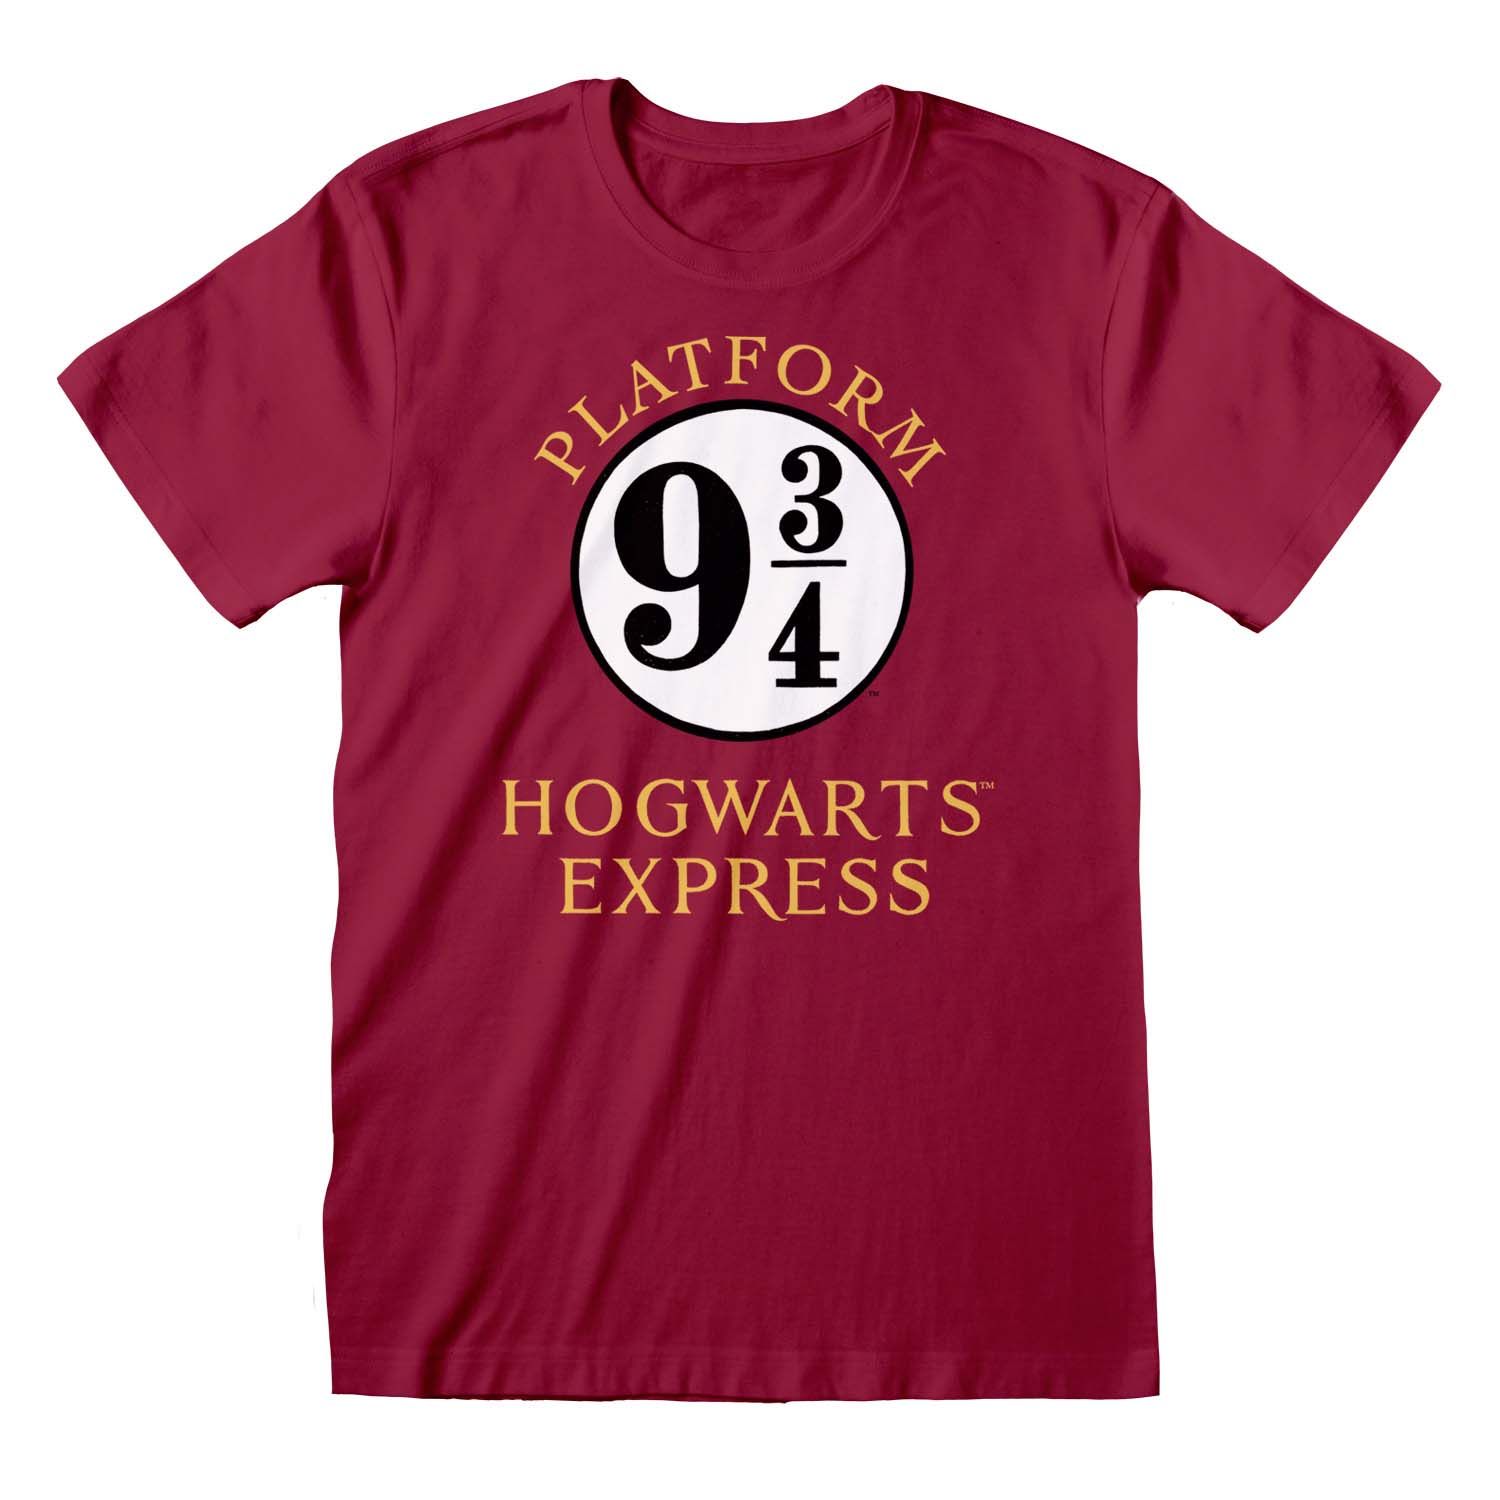 Harry Potter: Platform - Hogwarts T-Shirt 9 3/4 Merchoid Express